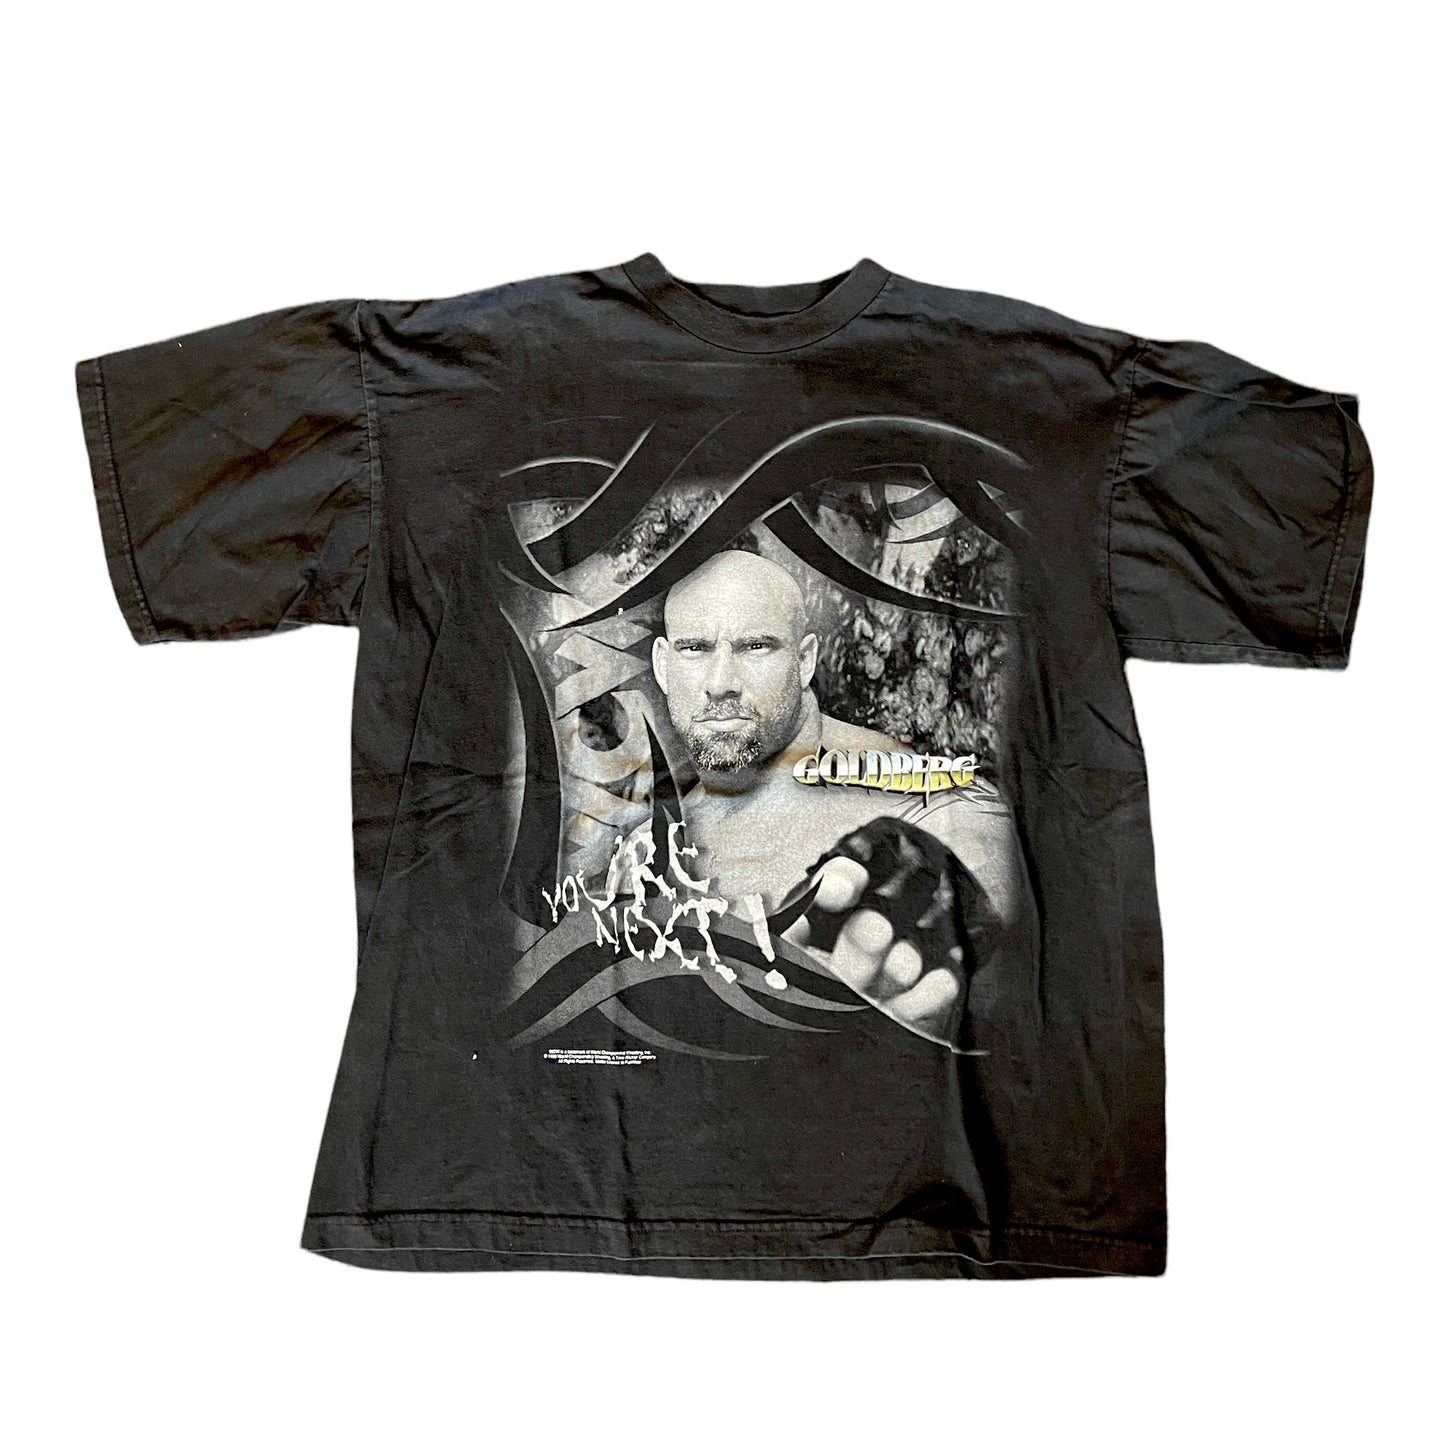 2000s Goldberg WWE Graphic Shirt